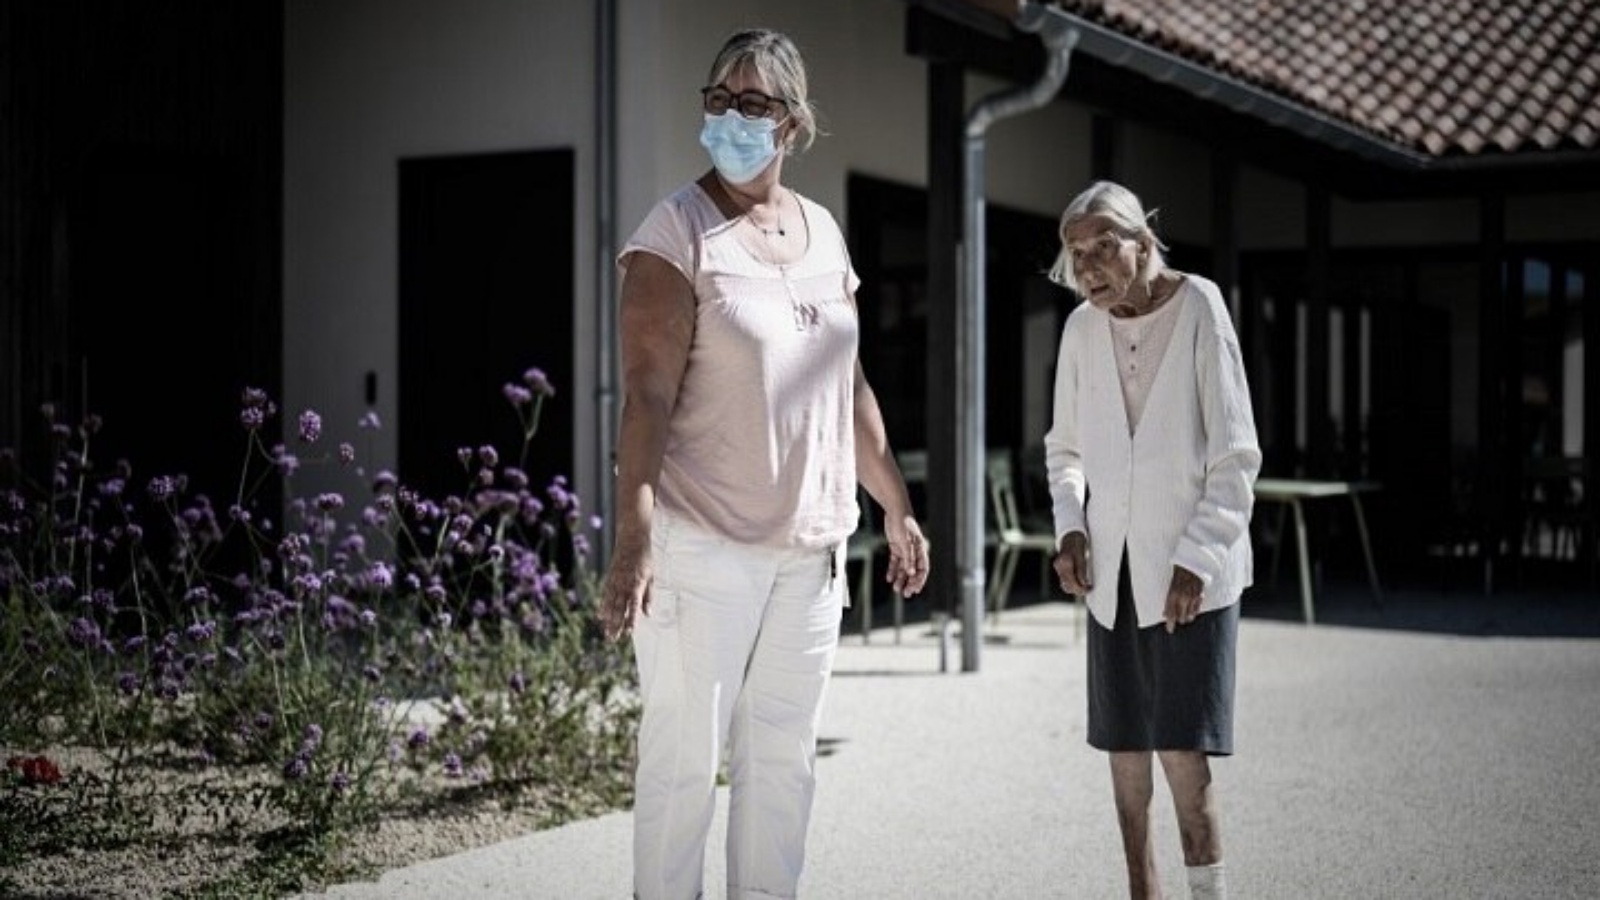 مريضة بألزهايمر (على اليمين) ومتطوعة أثناء نزهة في موقع قرية لانديس للألزهايمر المخصص لمرضى ألزهايمر في داكس، جنوب غرب فرنسا